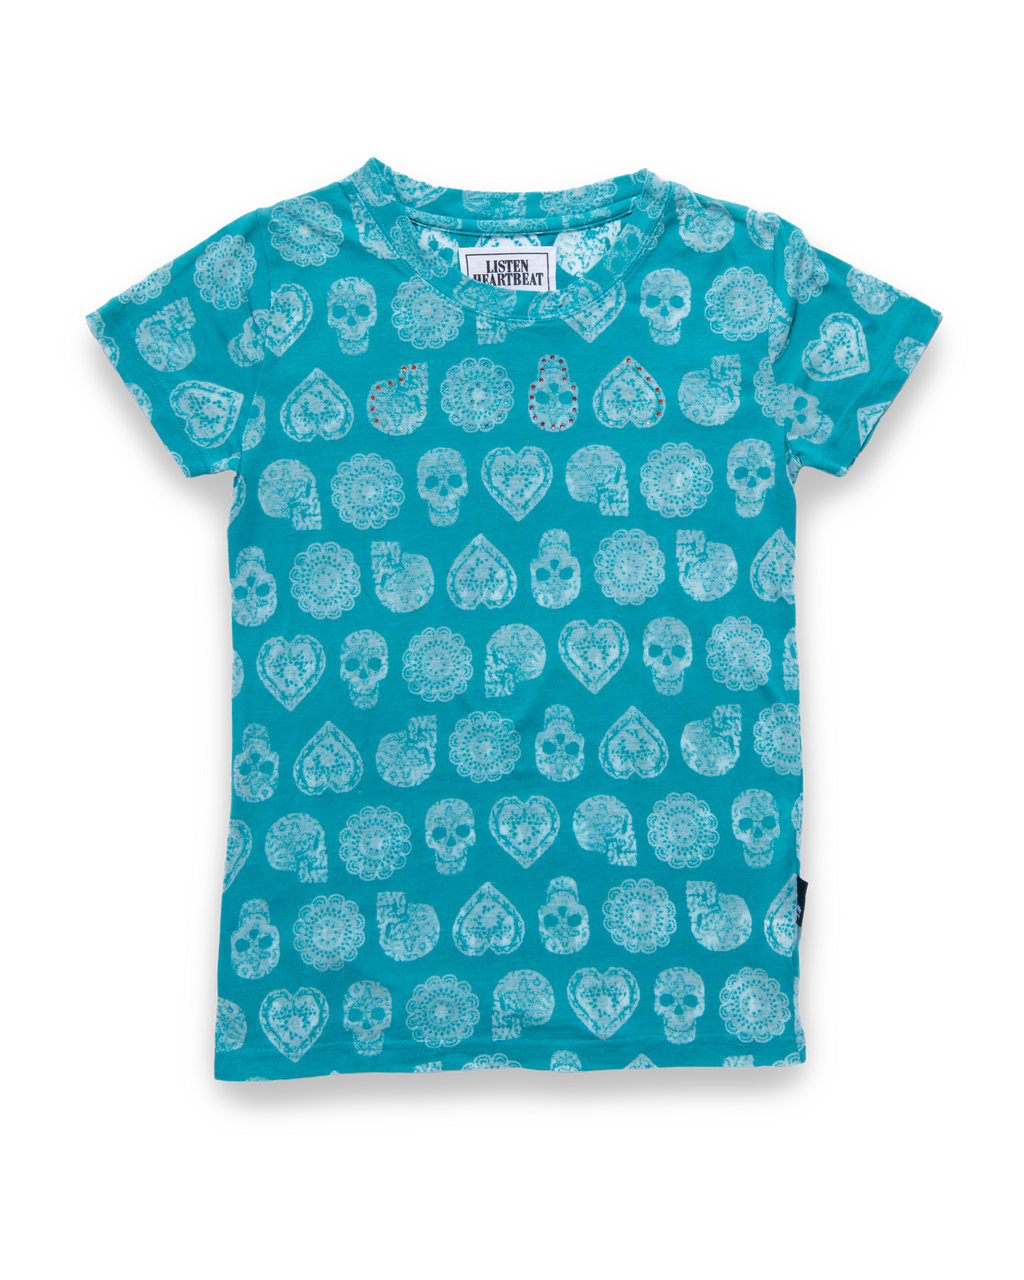 Skull Design T-Shirt